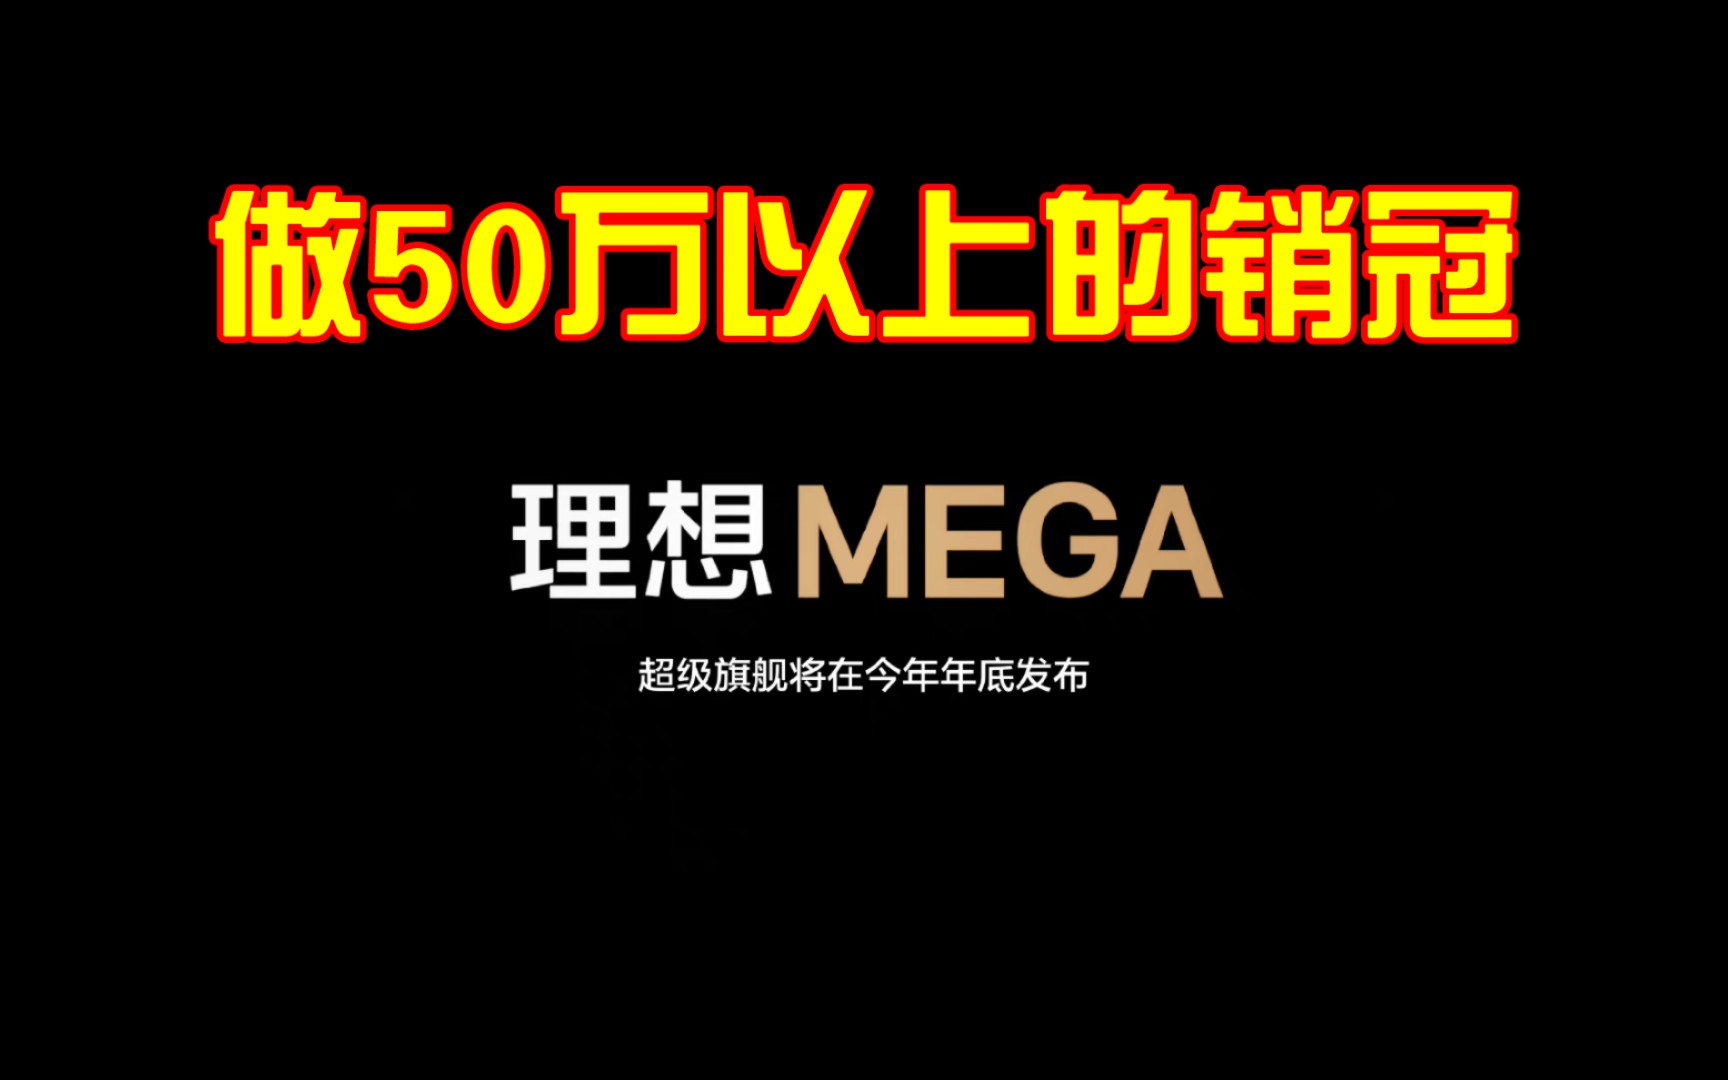 【自主老哥直播版】理想超级旗舰 MEGA年底上市:目标是50万以上所有品类的销冠